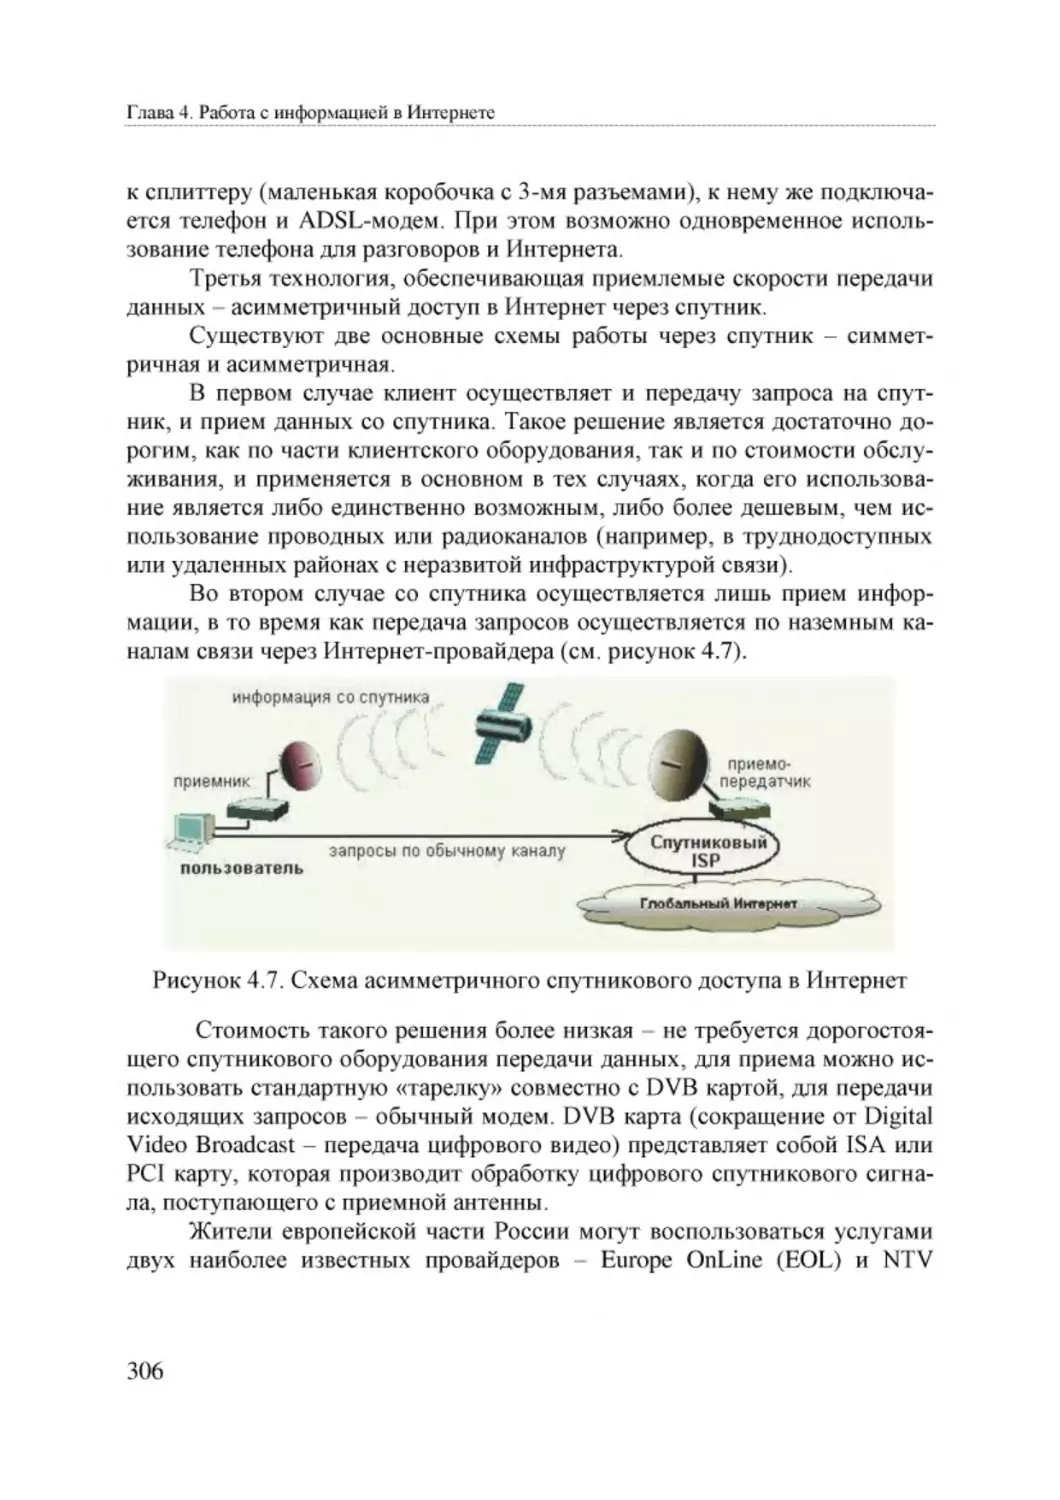 Informatika_Uchebnik_dlya_vuzov_2010 306